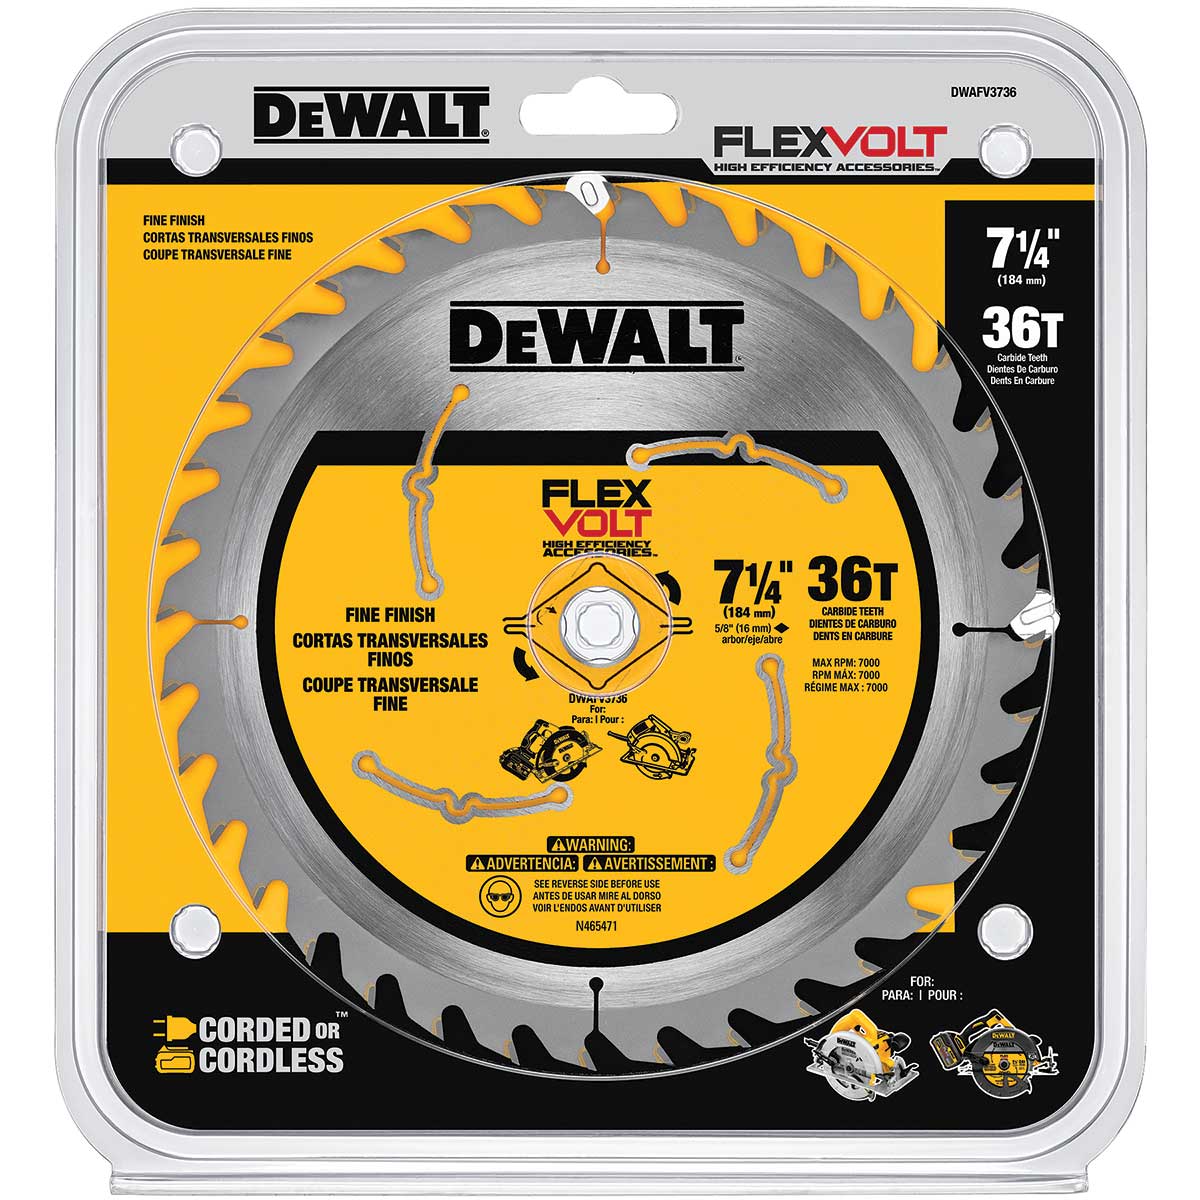 DEWALT 7-1/4" 36T Circular Saw Blade